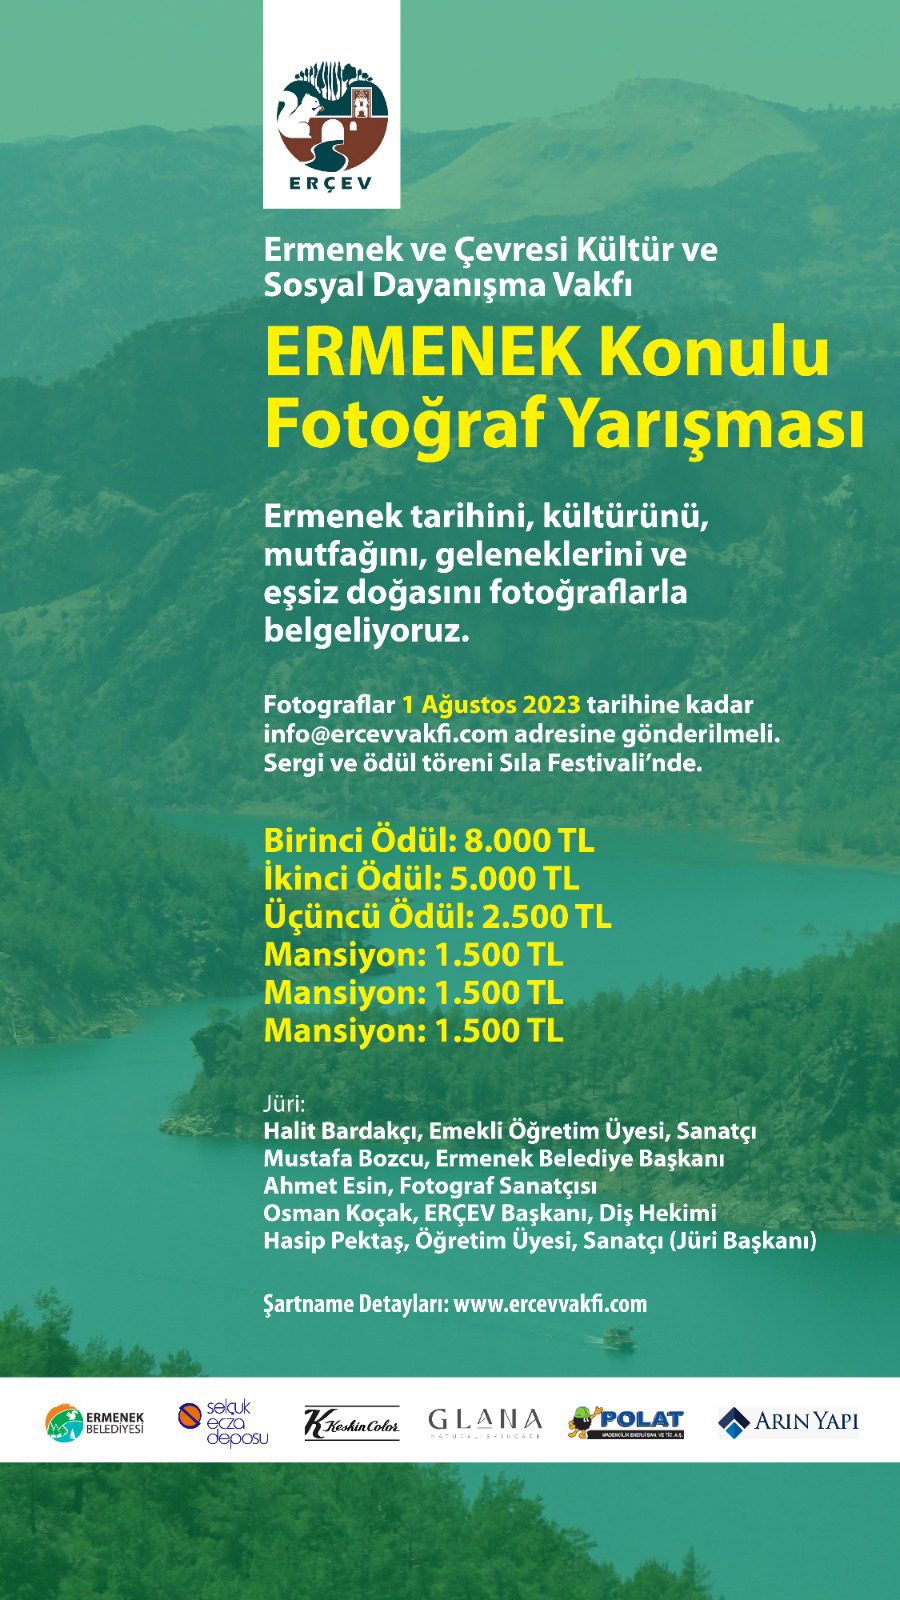 ERÇEV'in 'Ermenek' konulu fotoğraf yarışmasına katılmak için son 3 gün!